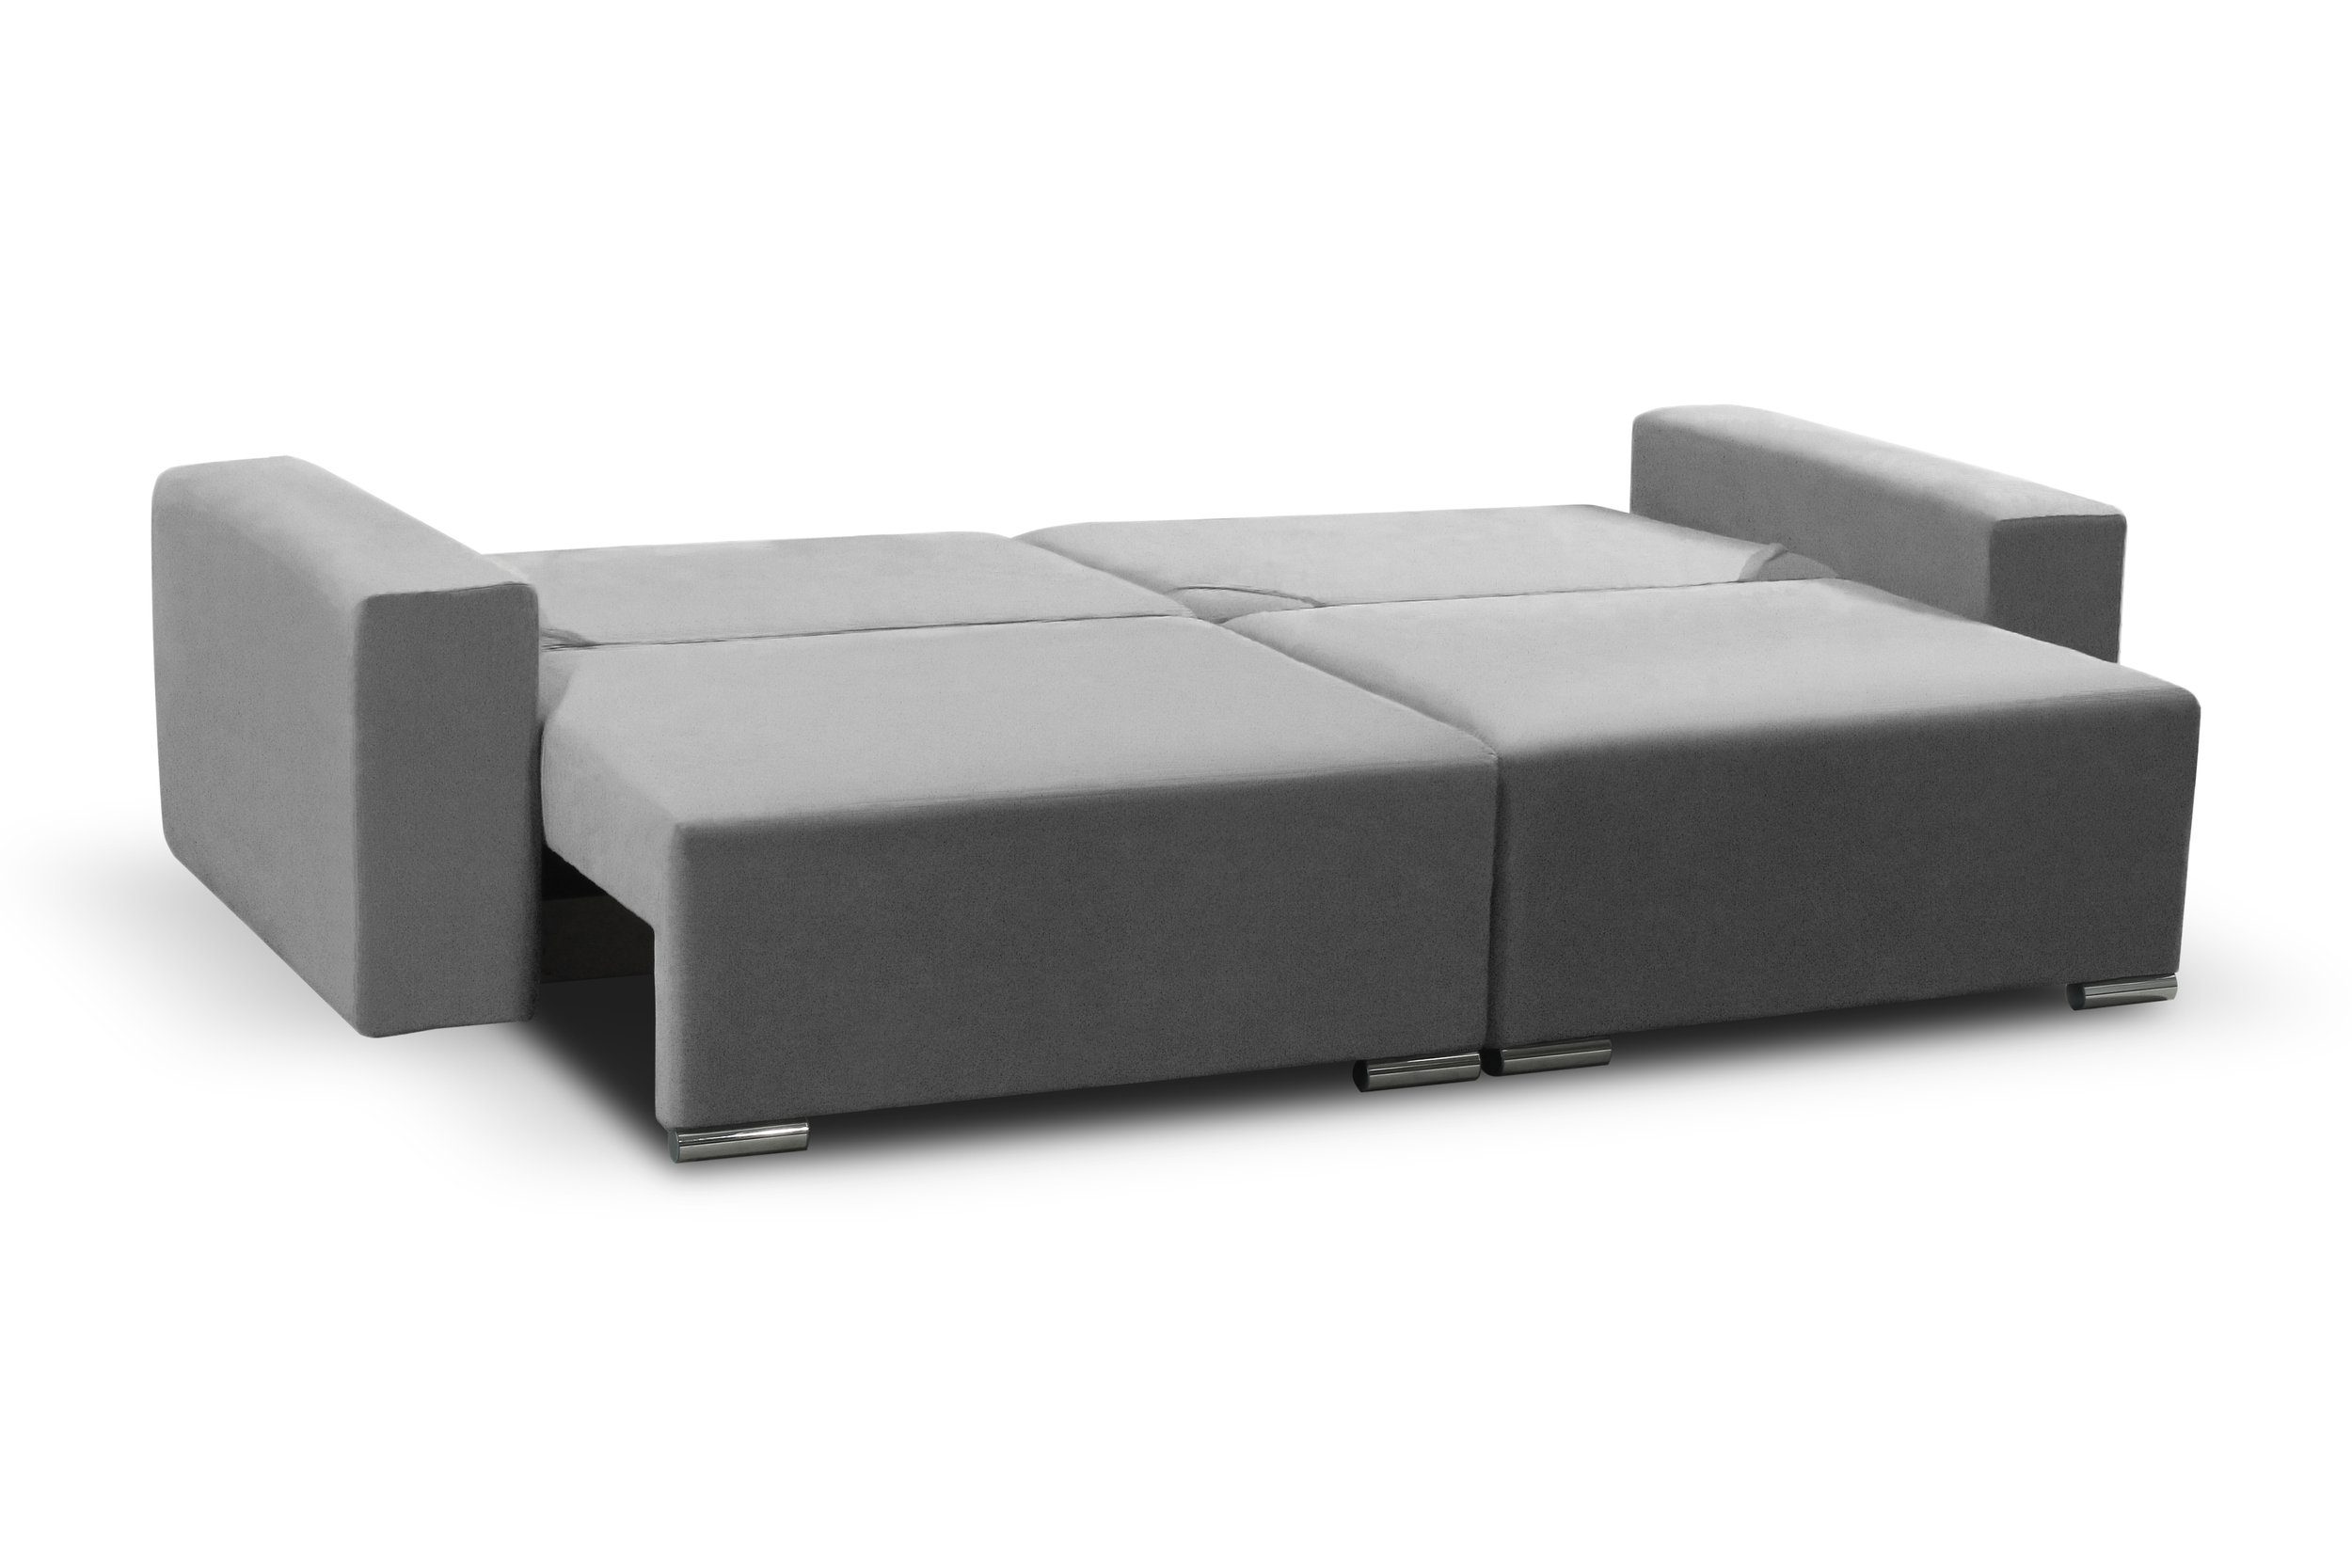 im Stylefy mit Modern Modern 3-Sitzer stellbar, Sofa, inklusive Design, 2-Sitzer, Afina, Raum Kissen, Bettfunktion, frei